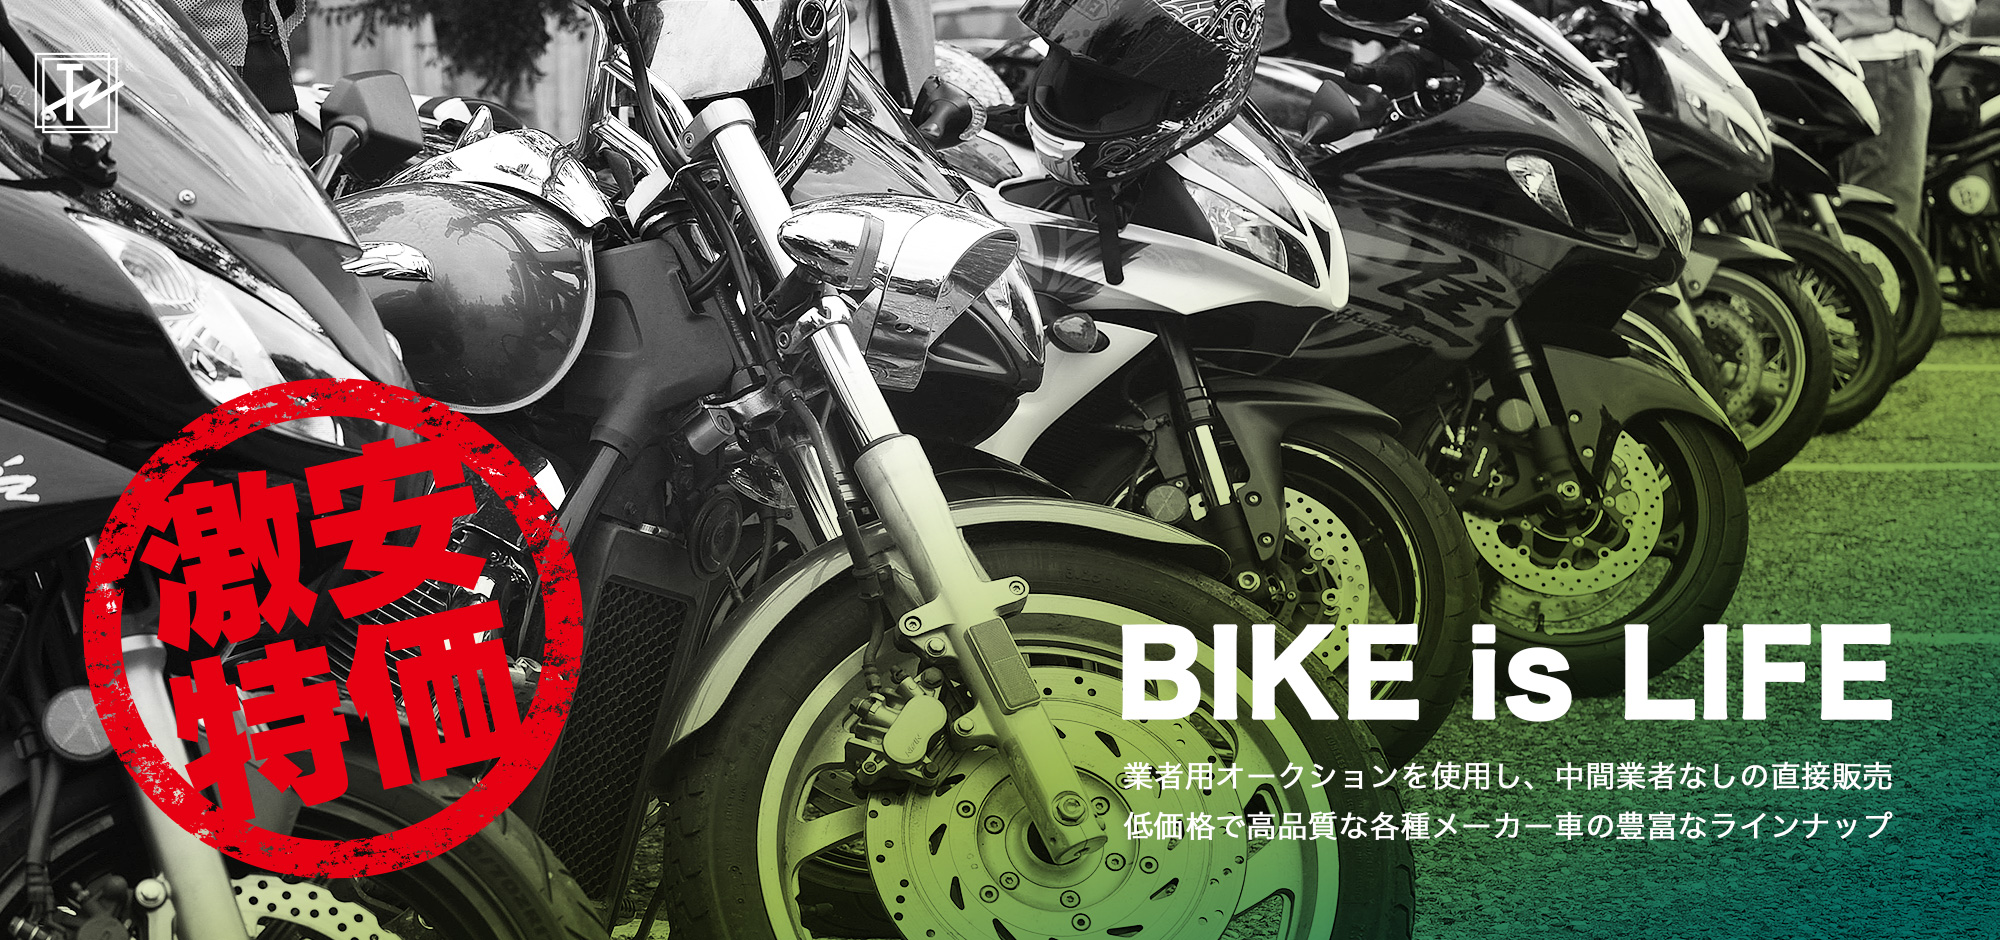 株式会社沼商では中古バイクを低価格で販売しています。沼商がご用意する各種メーカー車（ホンダ、ヤマハ、カワサキ、スズキ）をご覧ください。